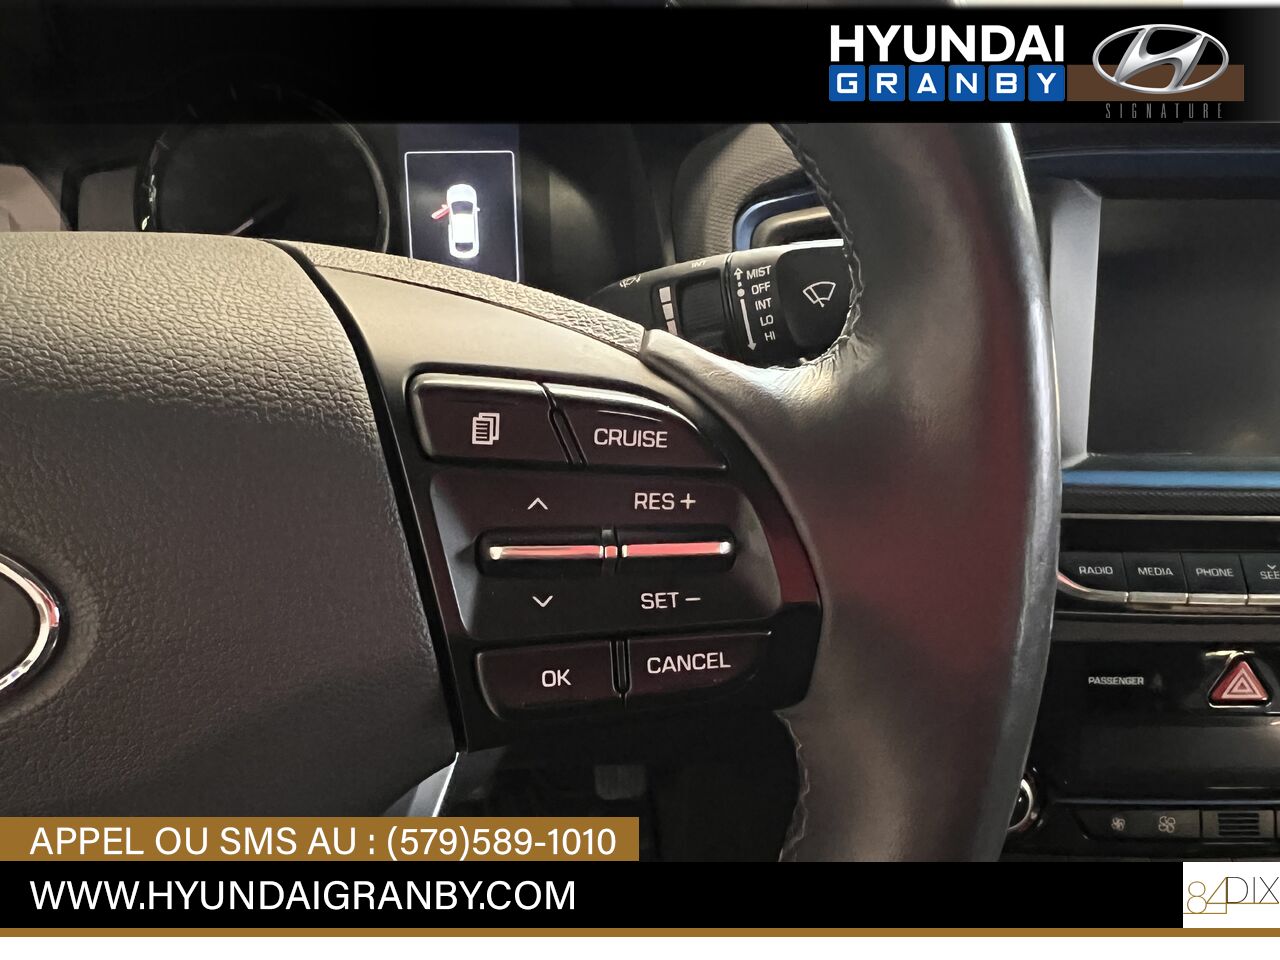 Hyundai Ioniq hybride 2017 Granby - photo #16